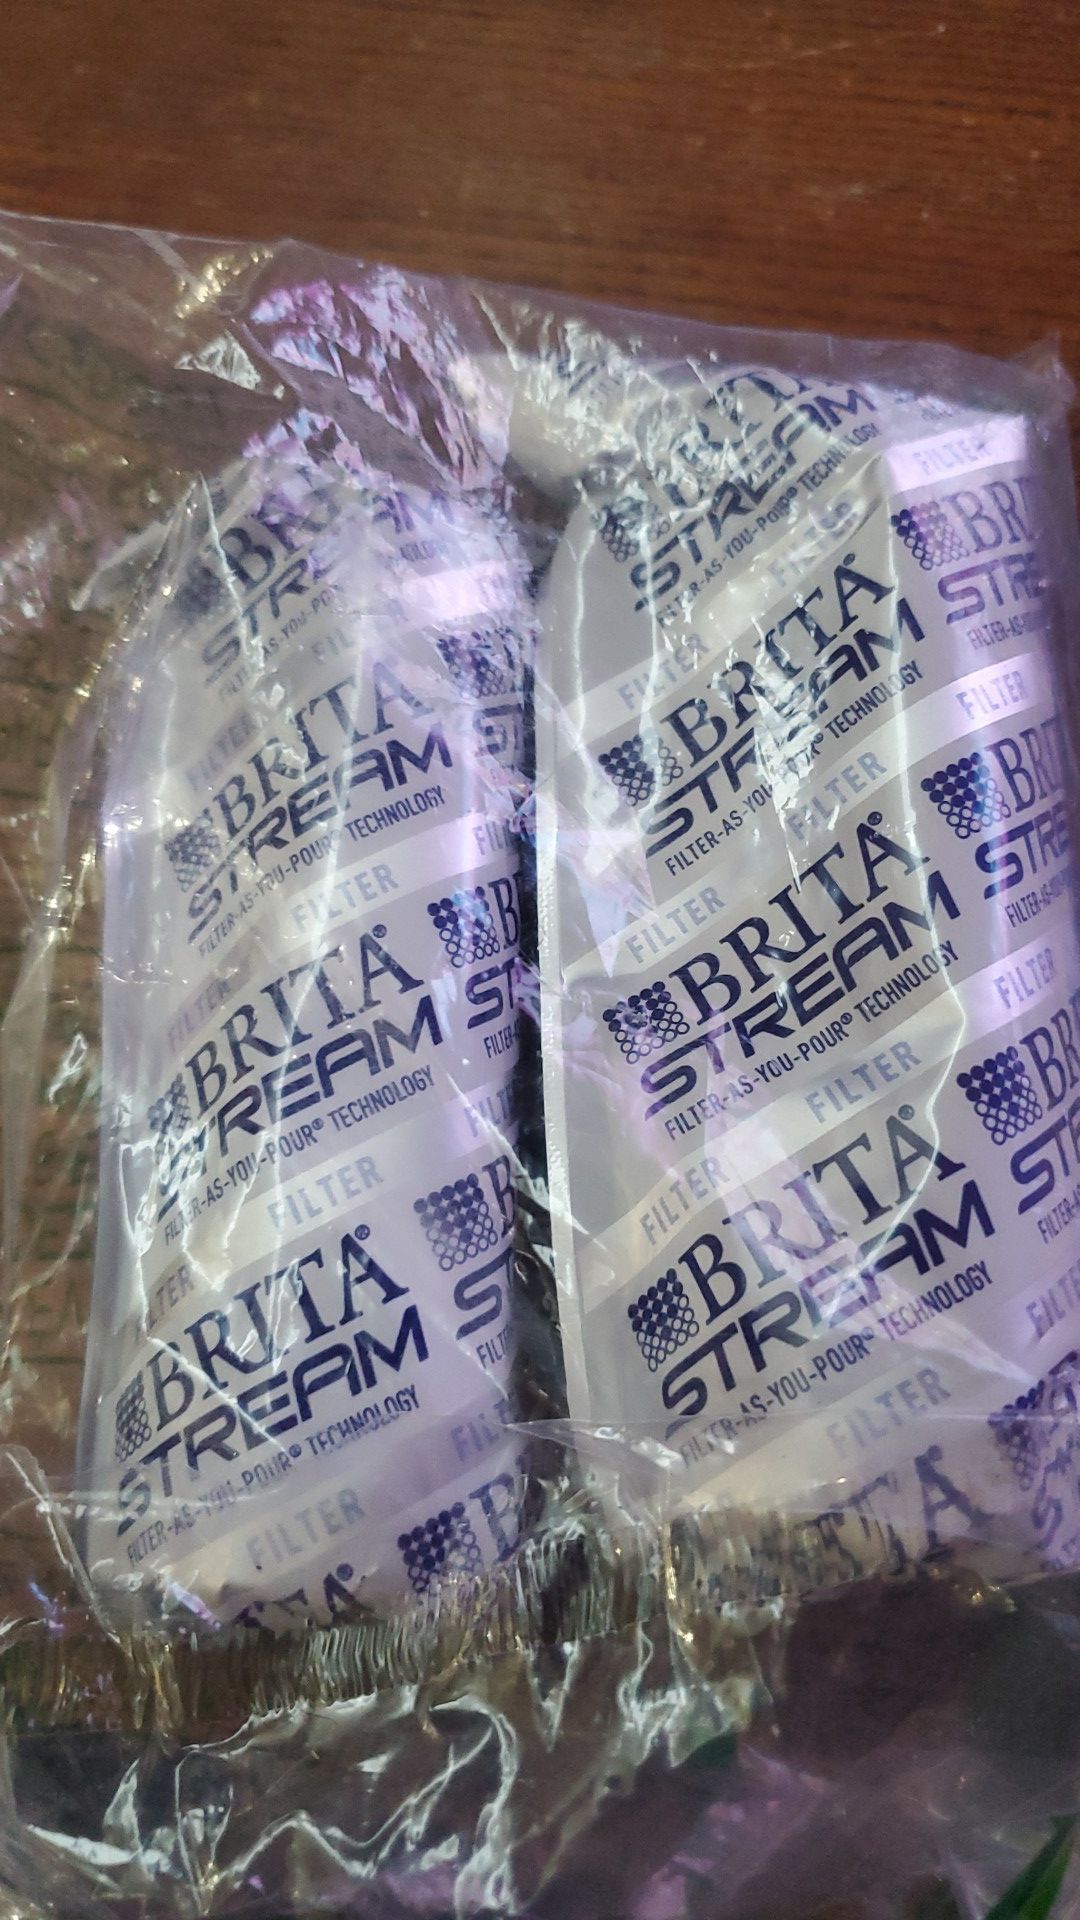 Two brita stream filters